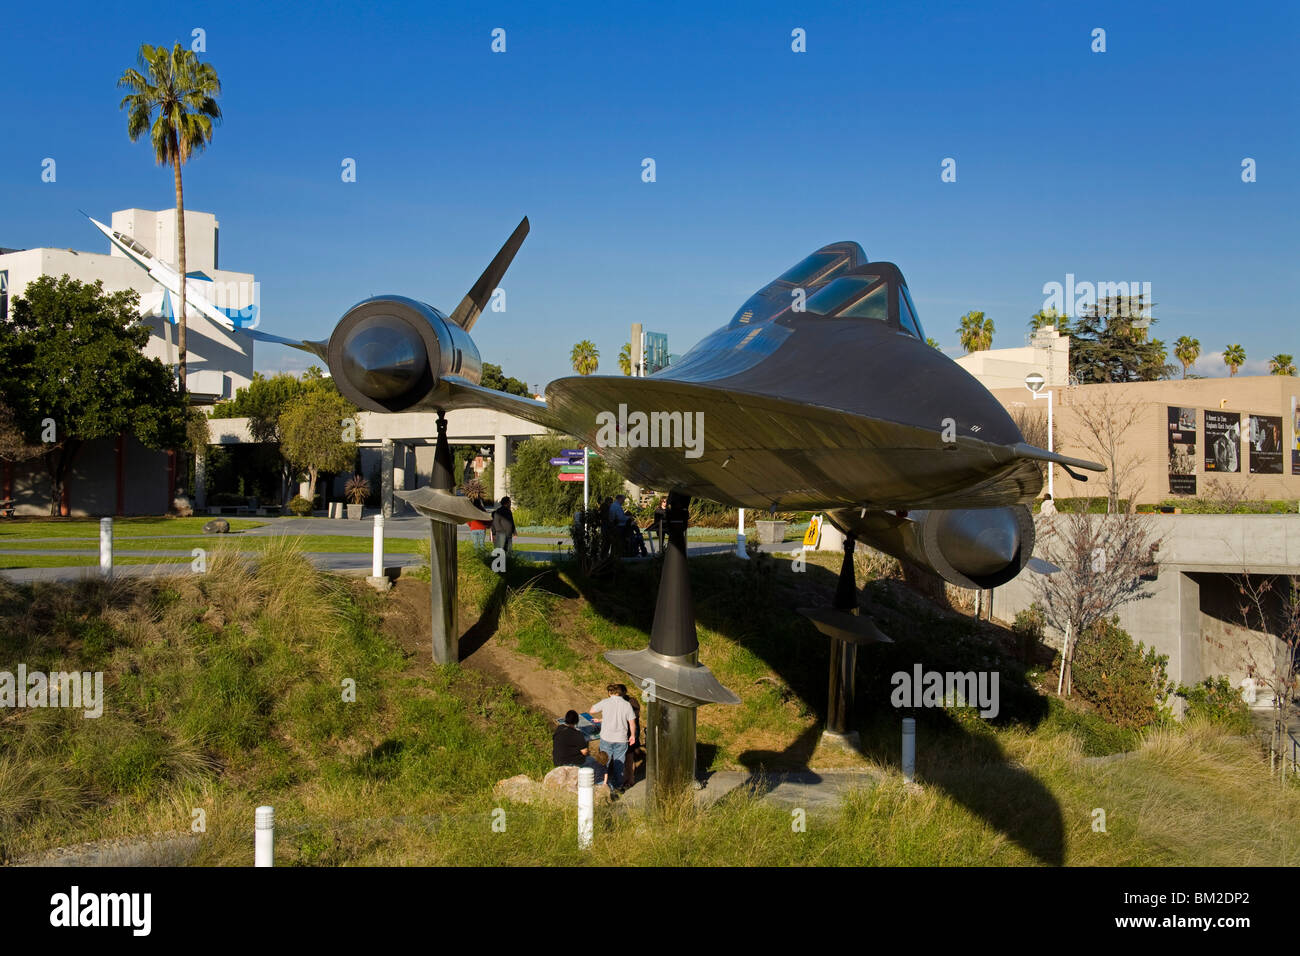 A-12 Blackbird in Exposition Park, Los Angeles, California, USA Stock Photo